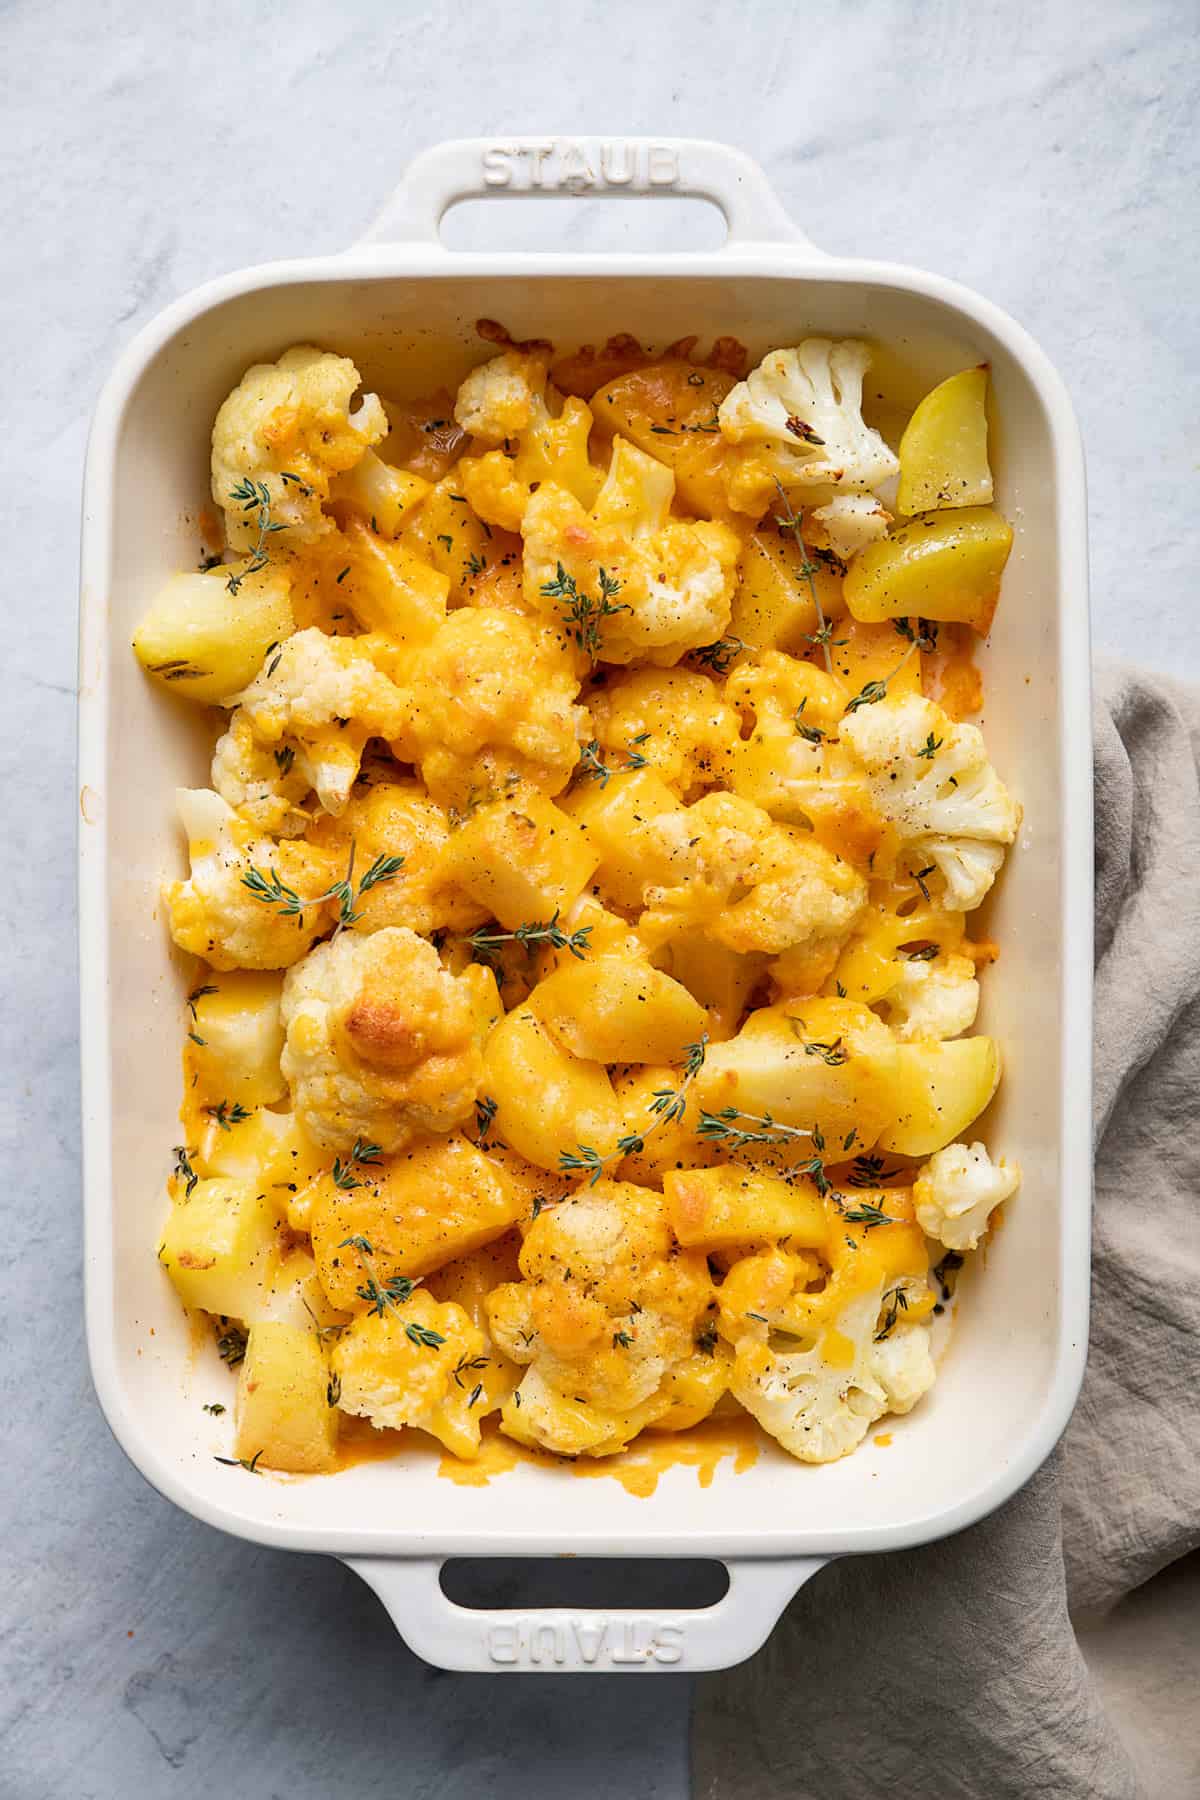  Cheesy Potato & Cauliflower Casserole in a dish